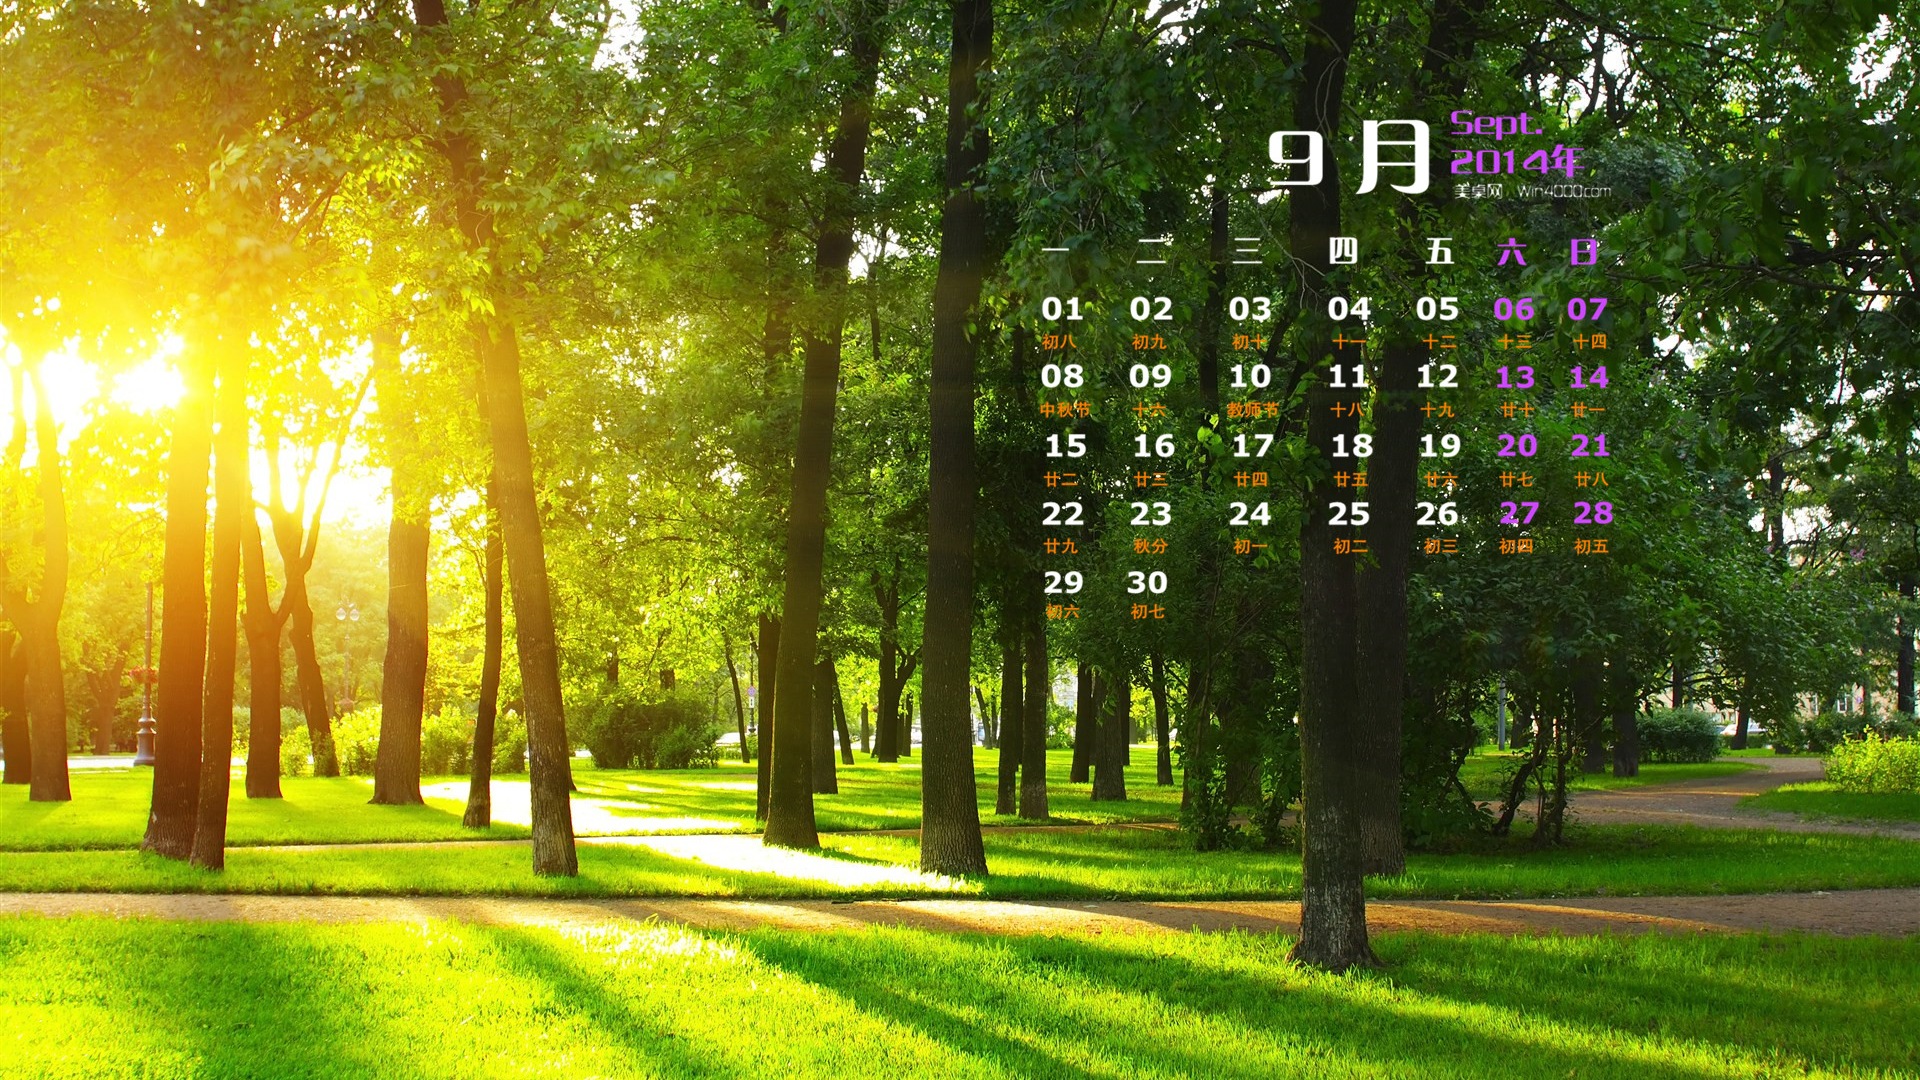 September 2014 Kalender Tapete (1) #19 - 1920x1080